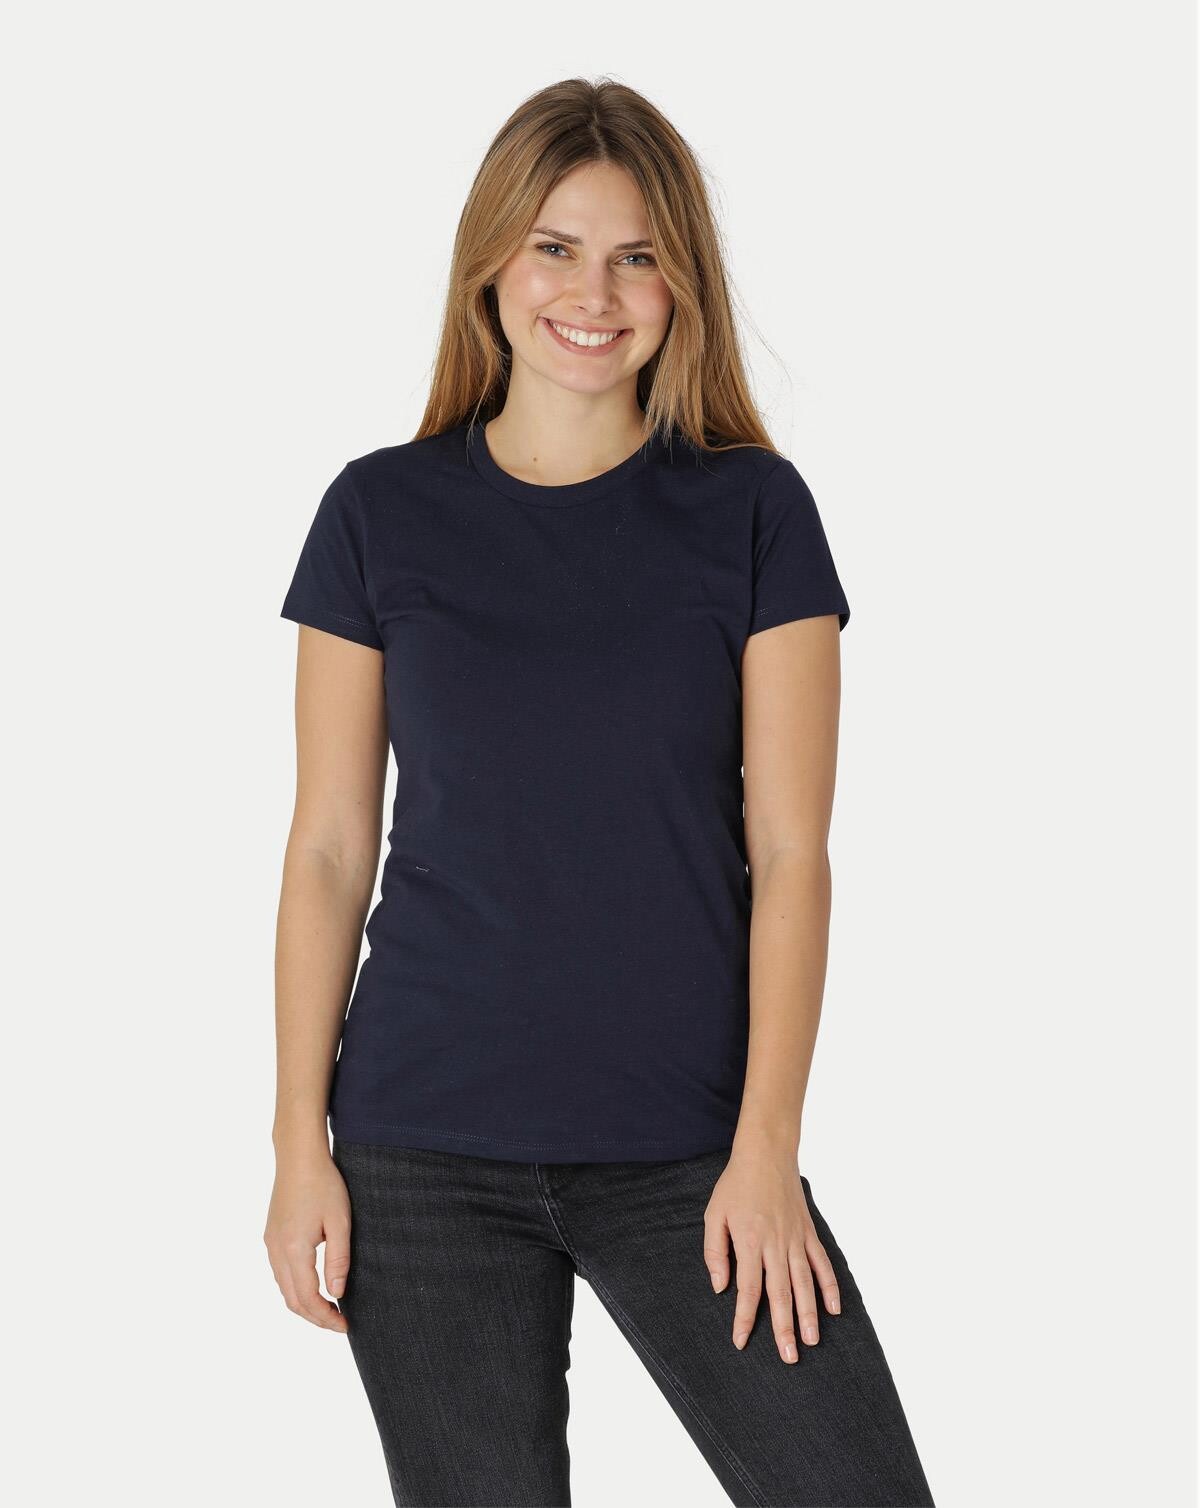 Neutral Økologisk Dame Tætsiddende T-Shirt (Navy, L)